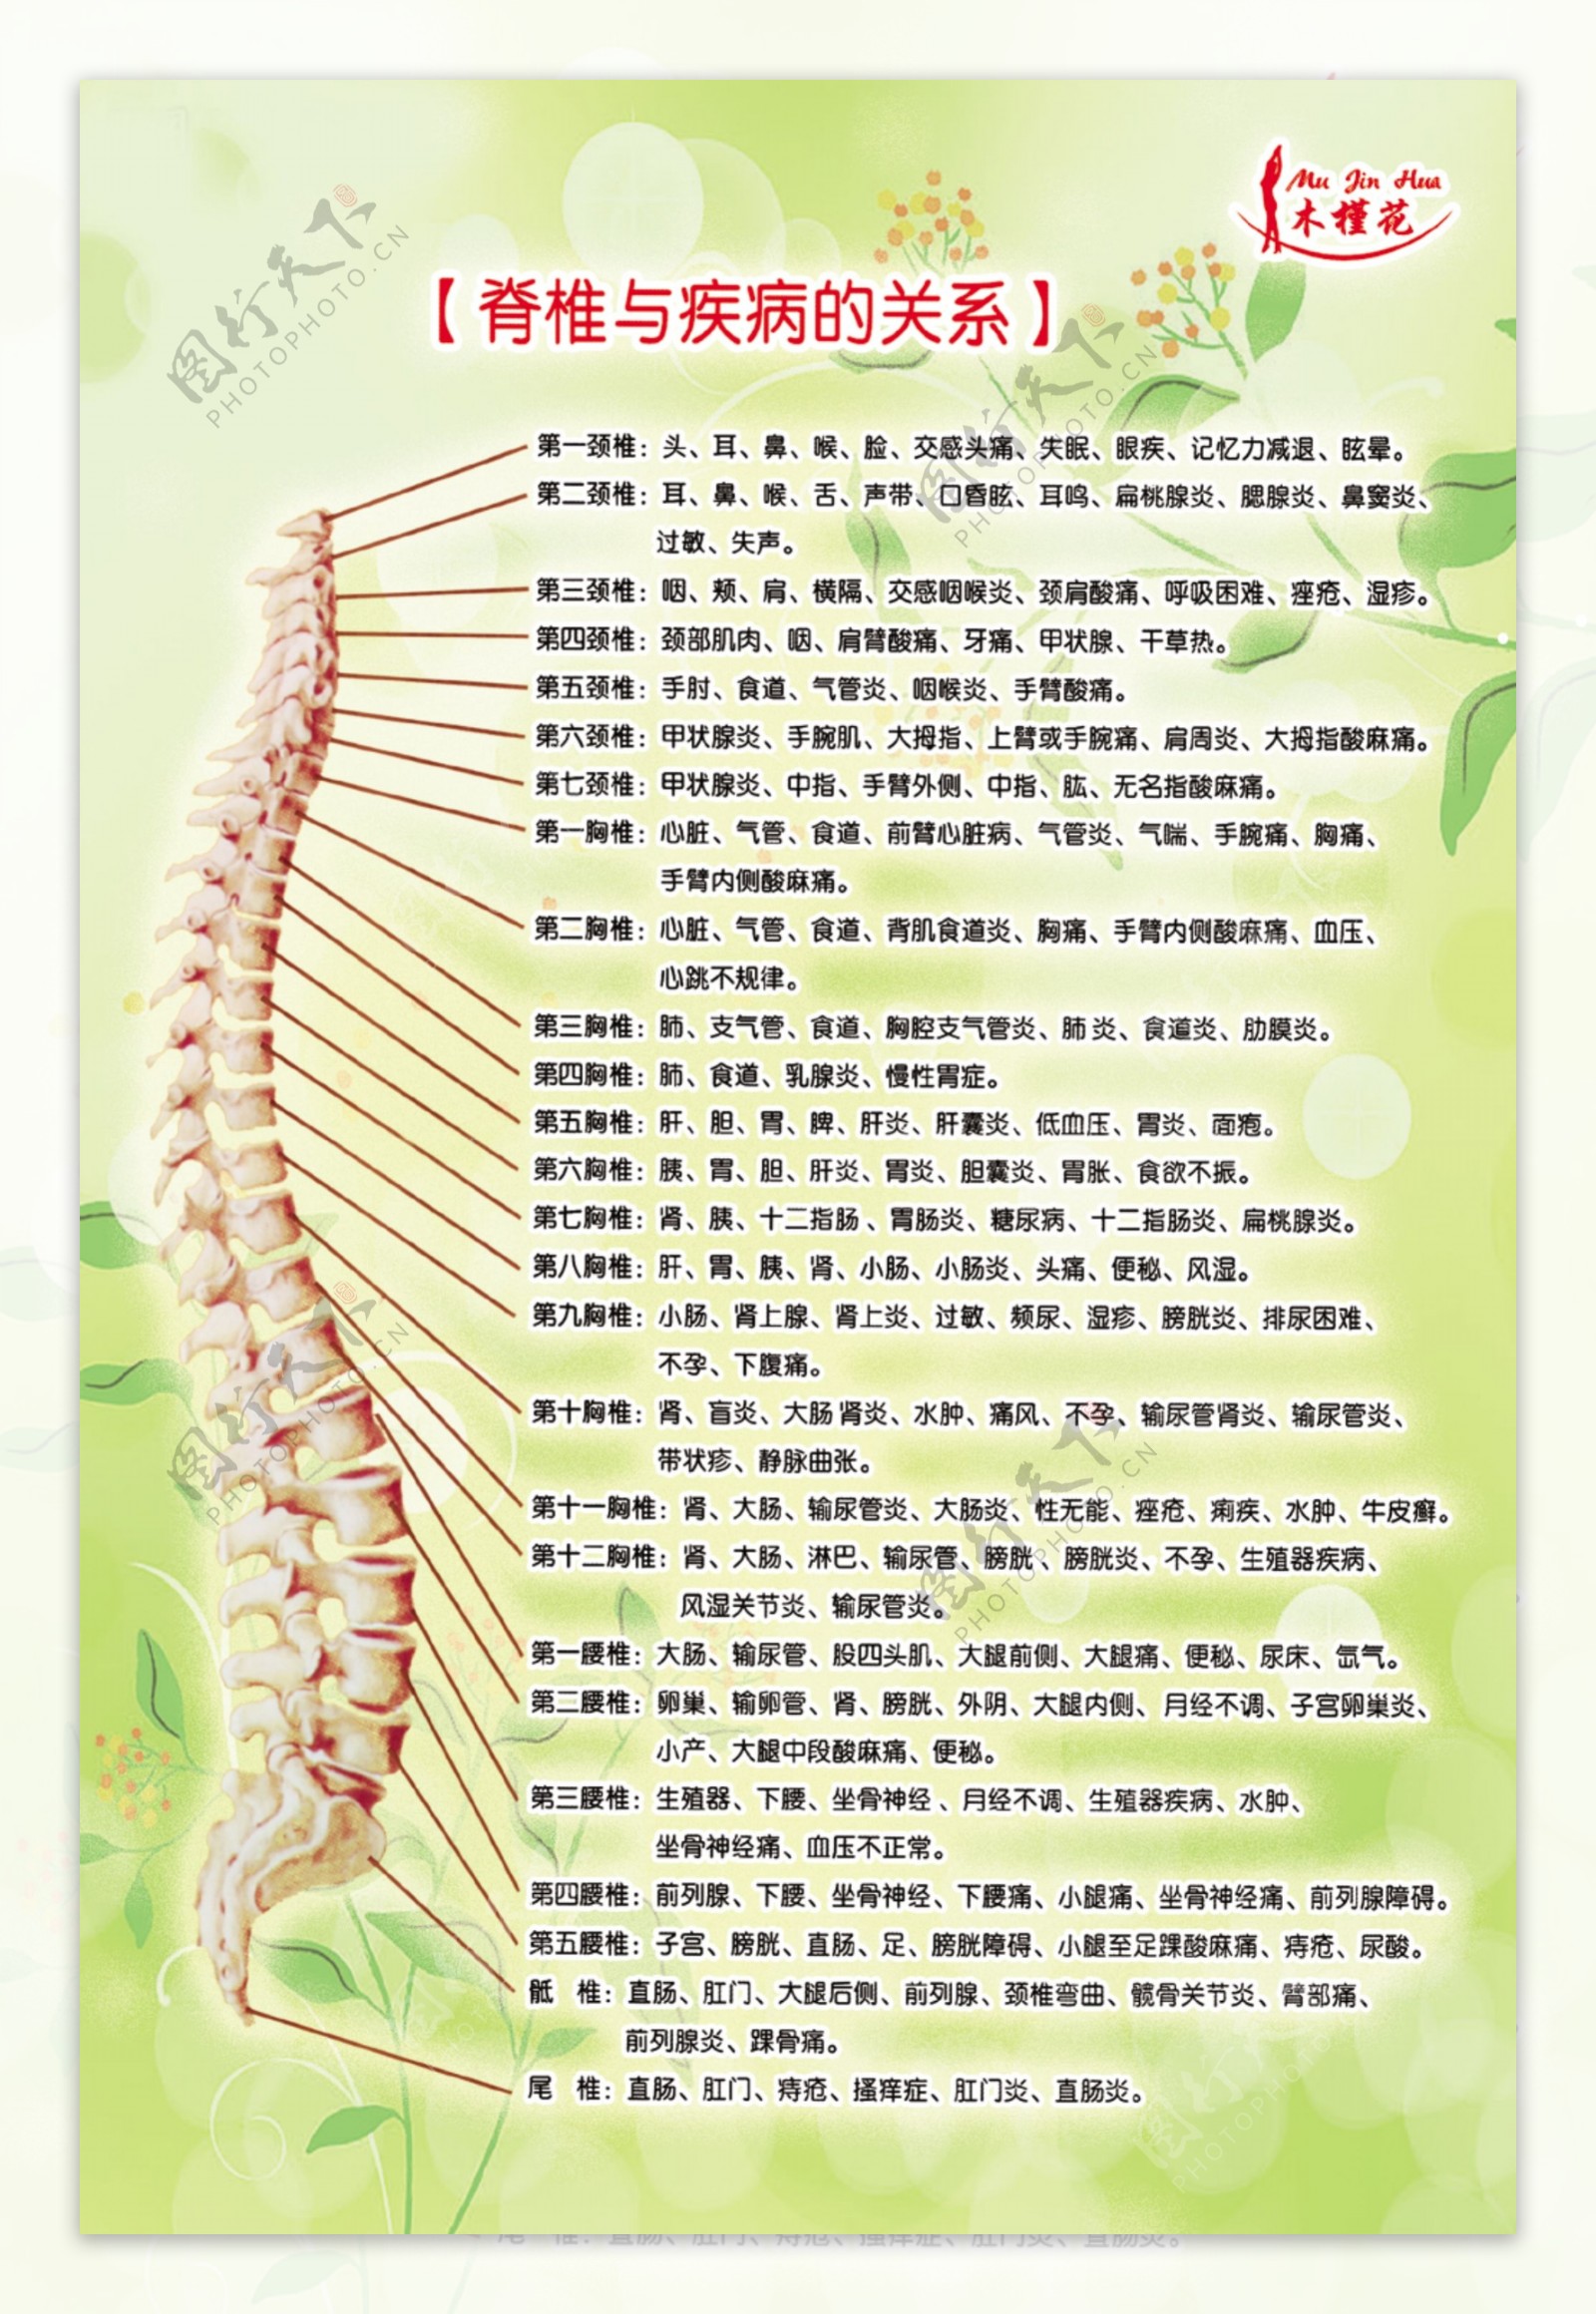 木槿花脊椎及治疗图片